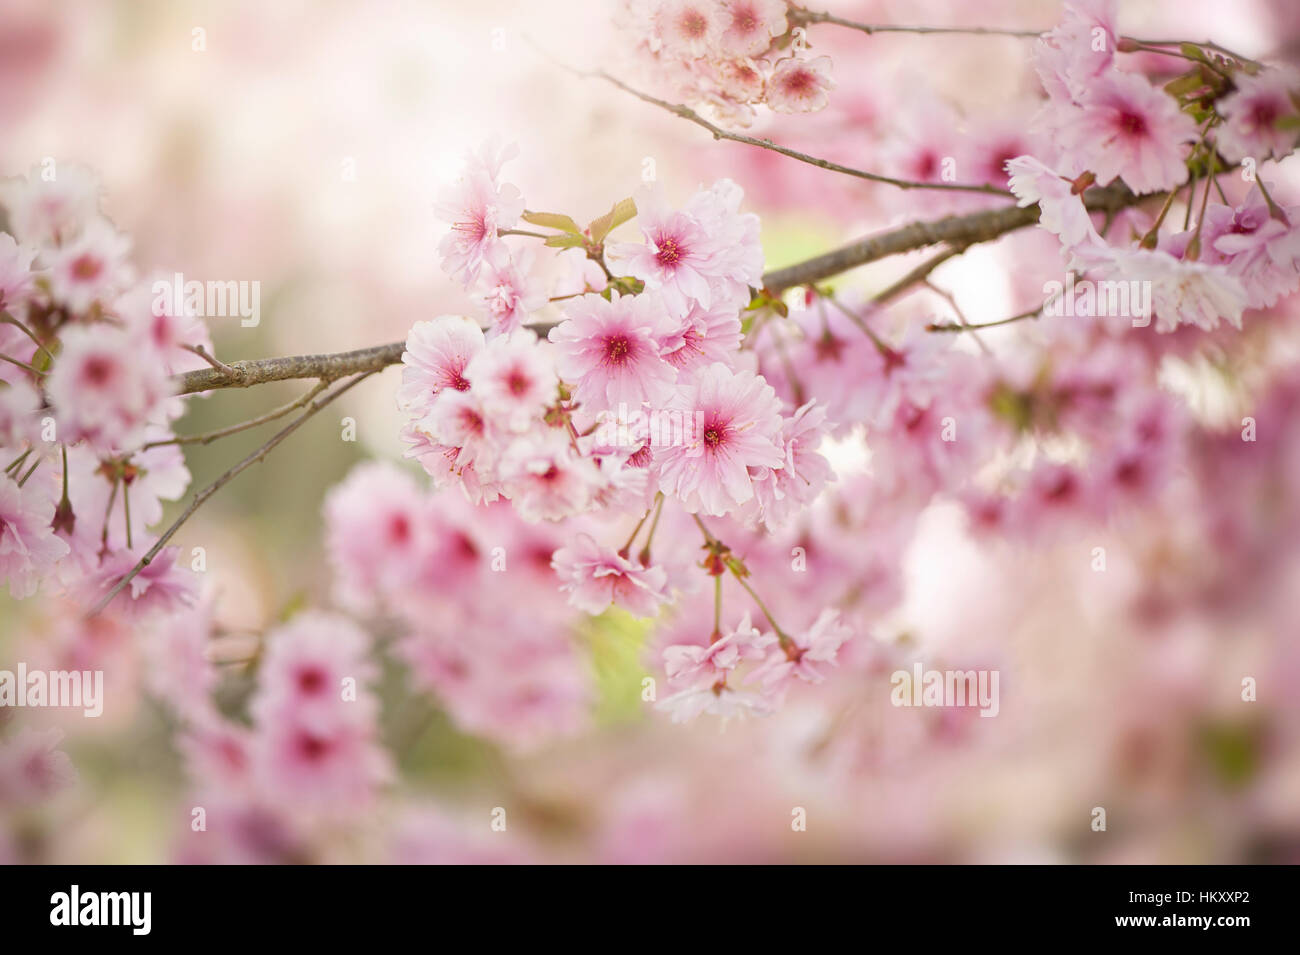 La délicate rose doux, printemps fleur de cerisier Prunus Rose 'Ballerina', image prise contre un doux fond ensoleillé. Banque D'Images